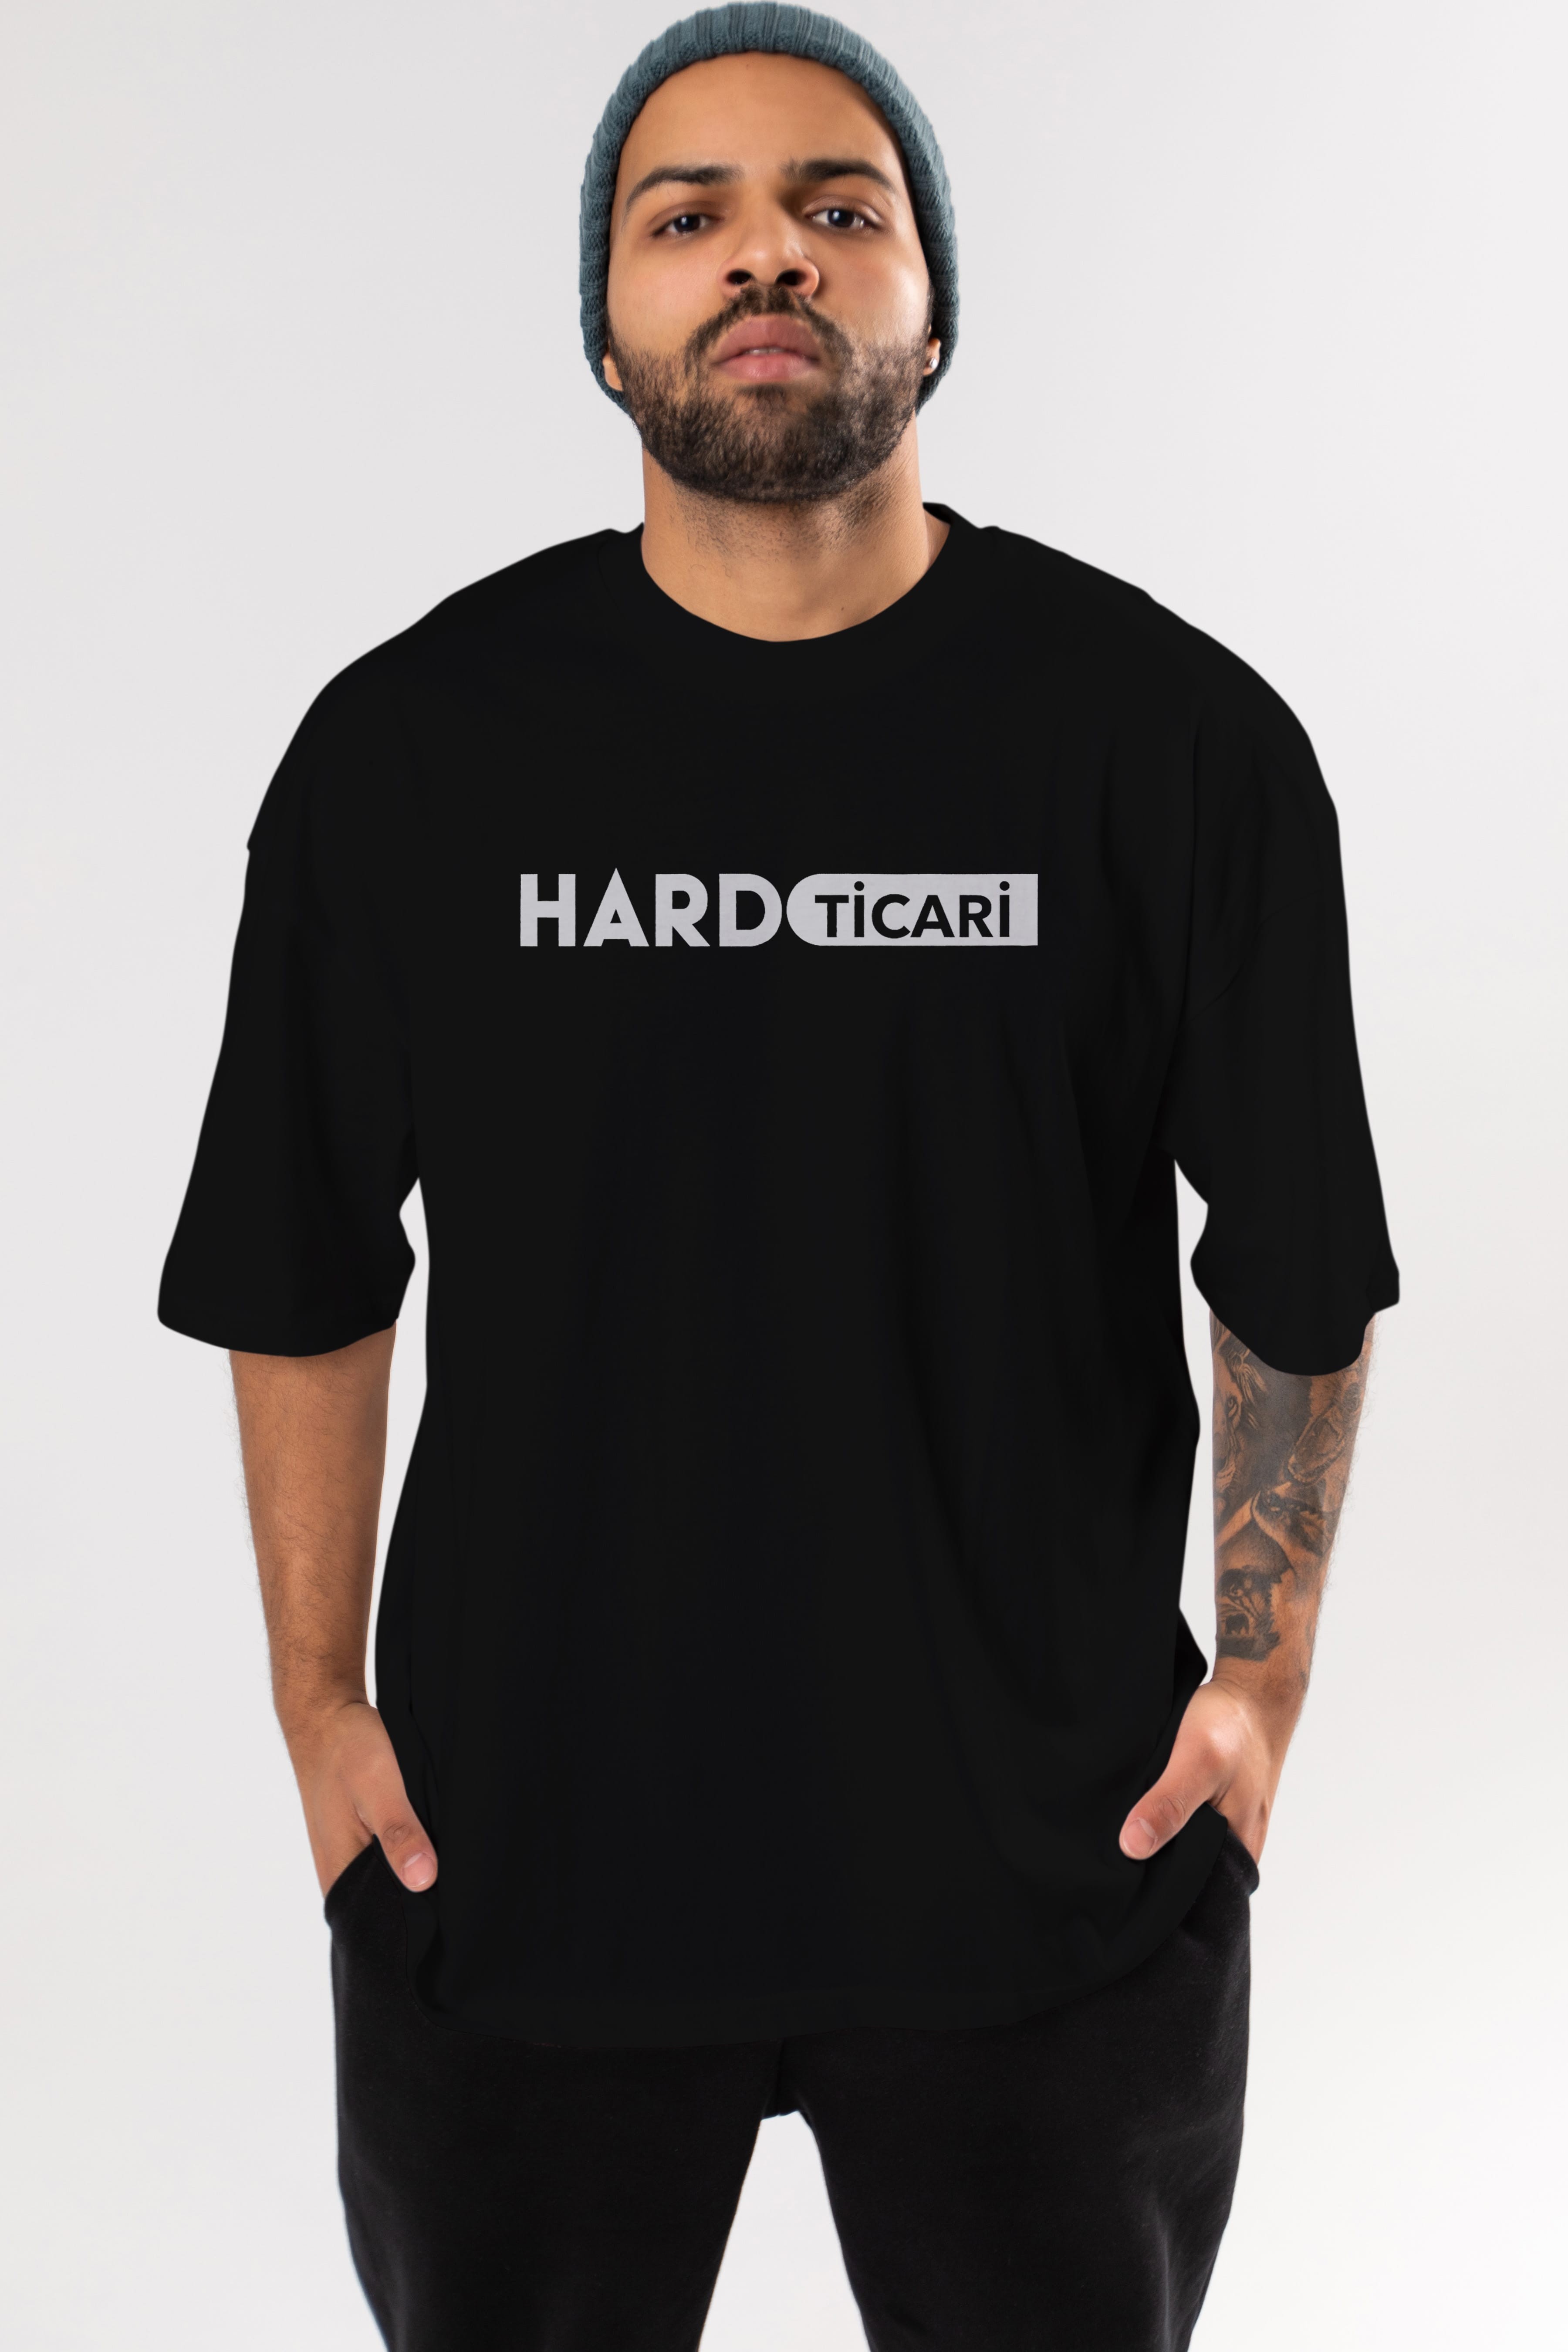 Hard Ticari Ön Baskılı Oversize t-shirt %100 pamuk Erkek Kadın Unisex